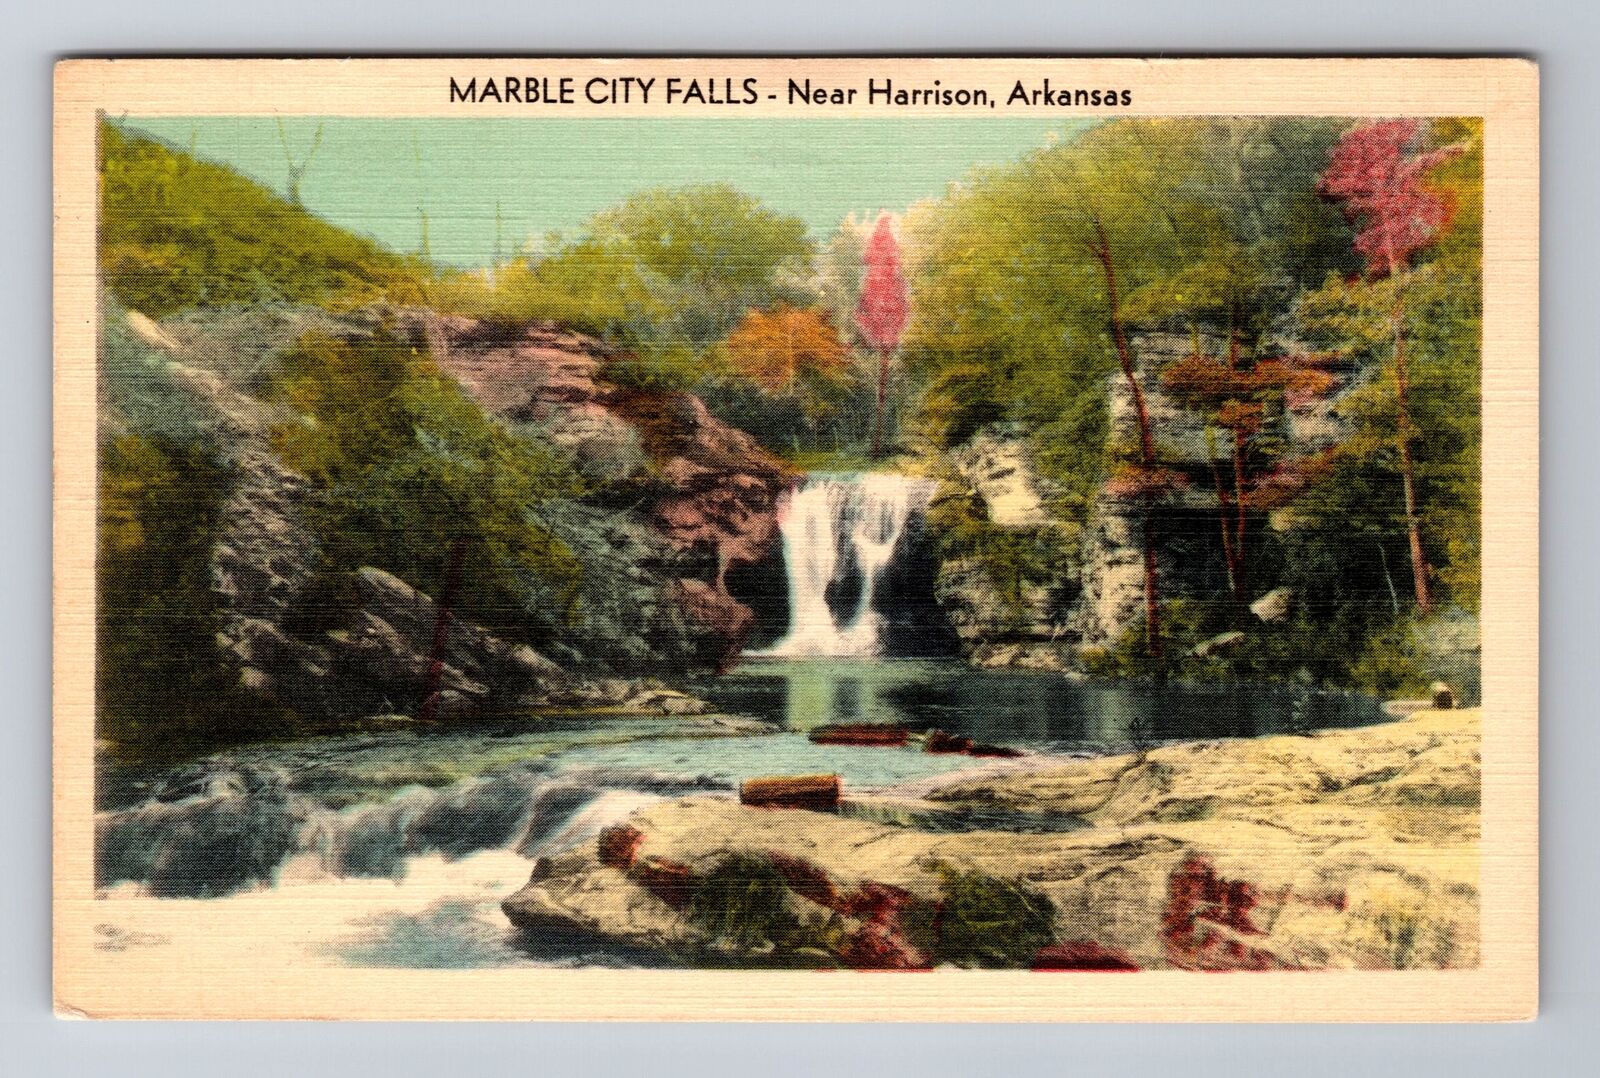 Harrison AR-Arkansas, Marble City Falls, Antique, Vintage Souvenir Postcard